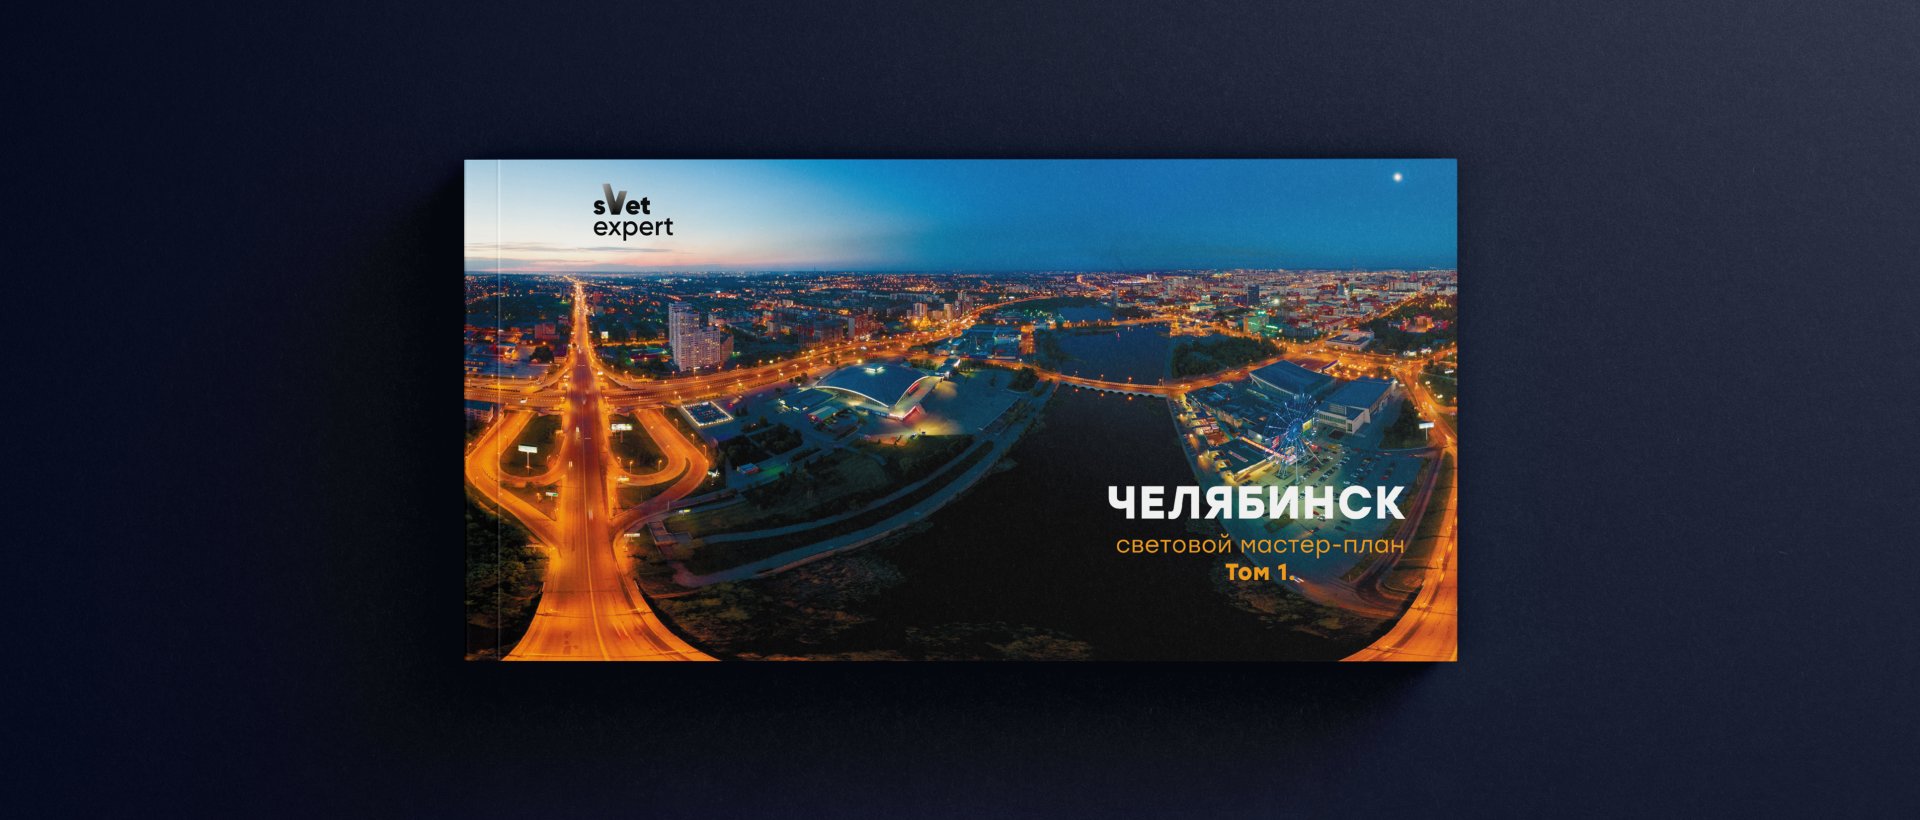 Мастер-план Челябинск - проект наружного освещения